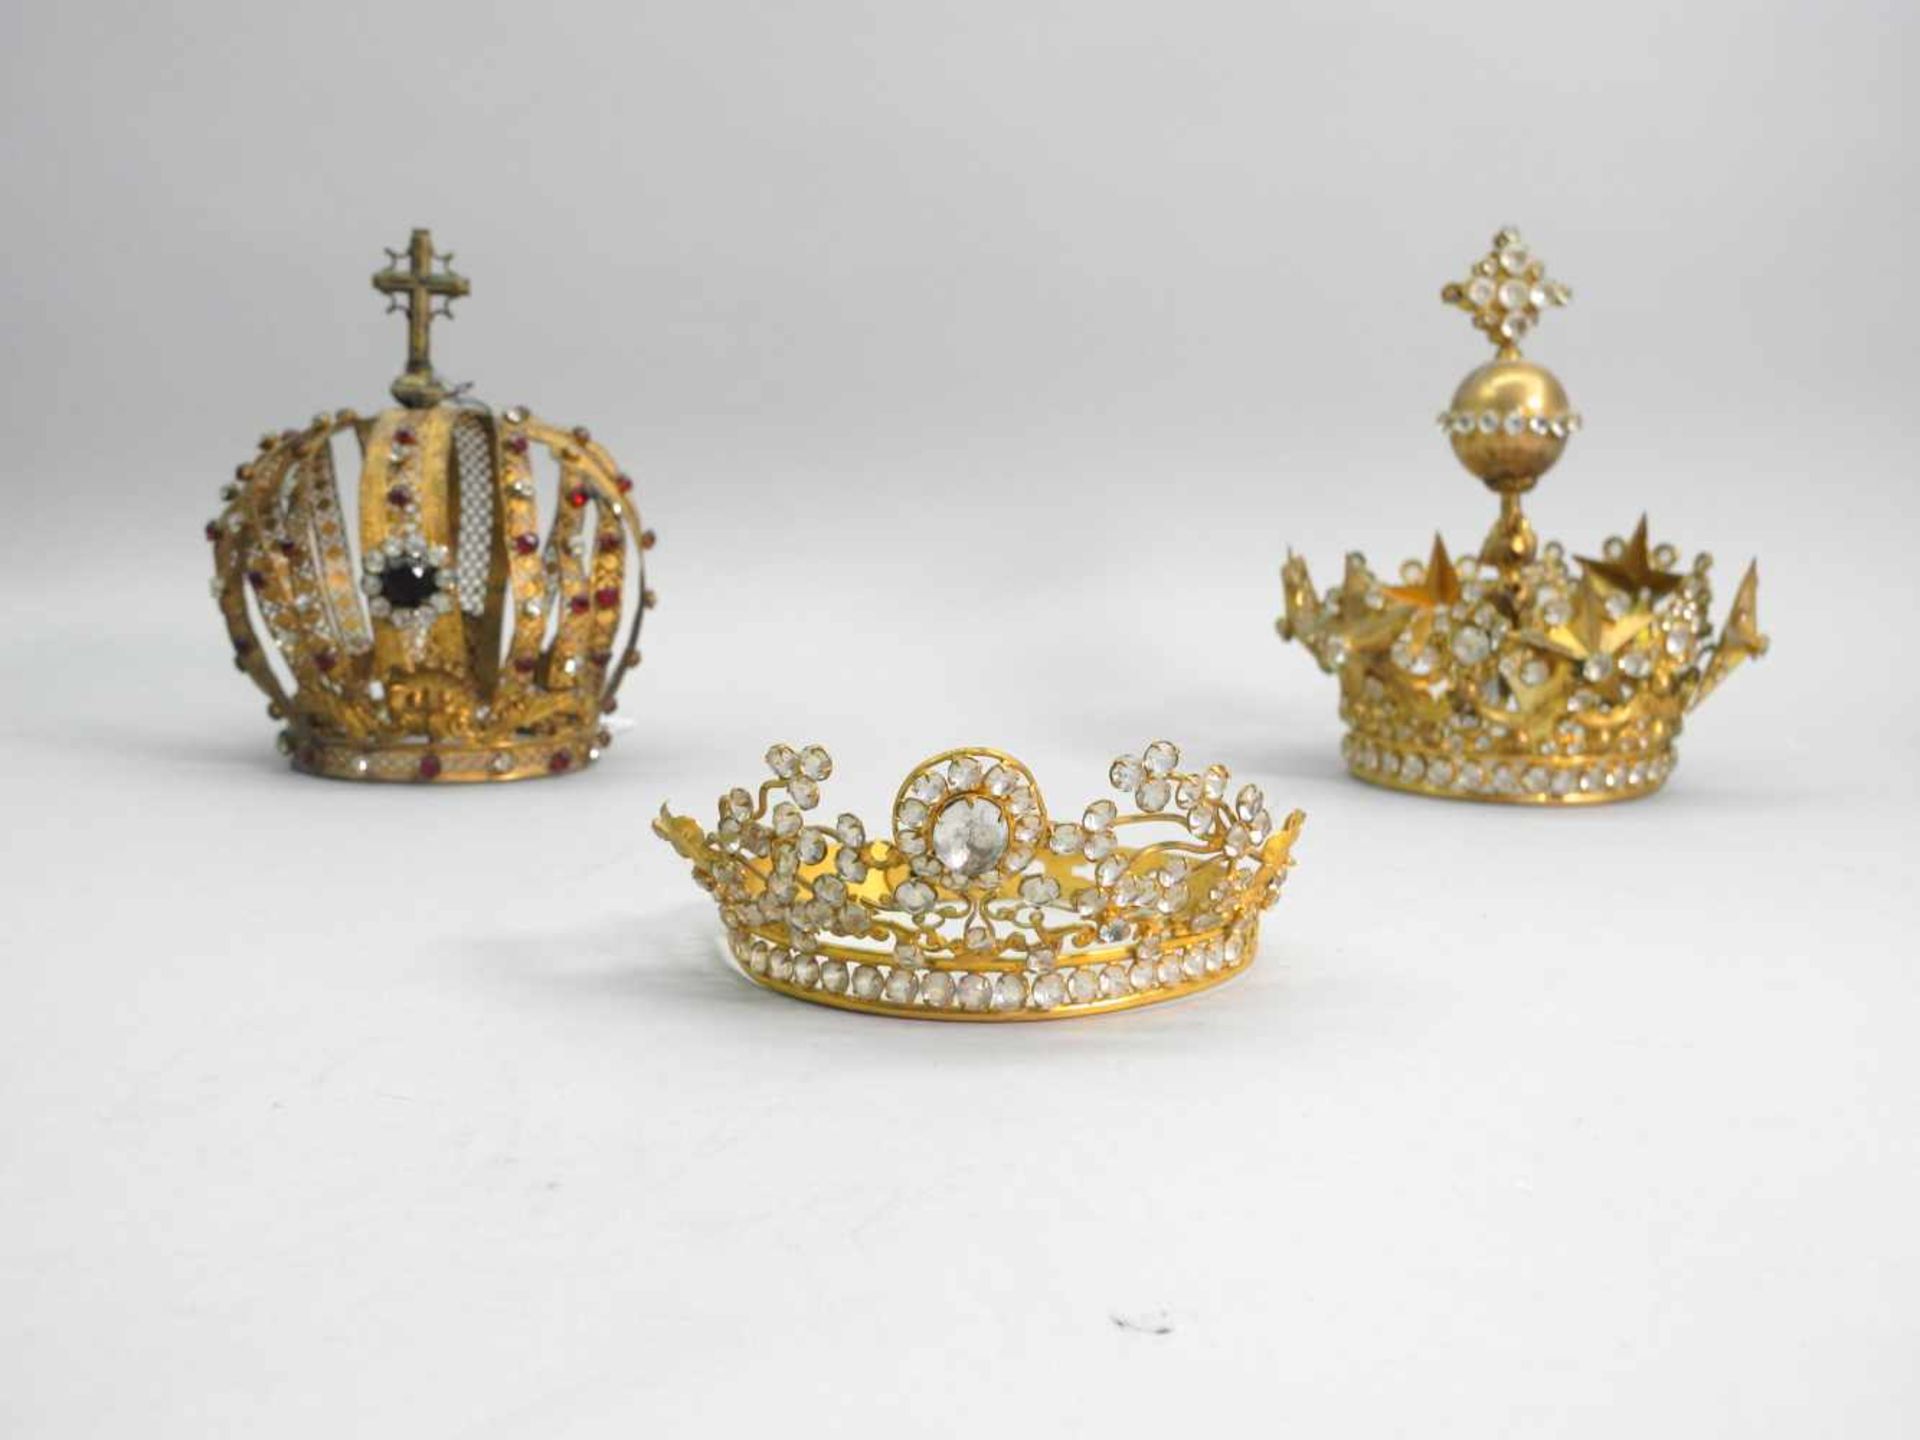 Drei kleine KronenMessing mit Glassteinbesatz. Drei kleine Kronen für Figuren in unterschiedlichen - Bild 2 aus 3